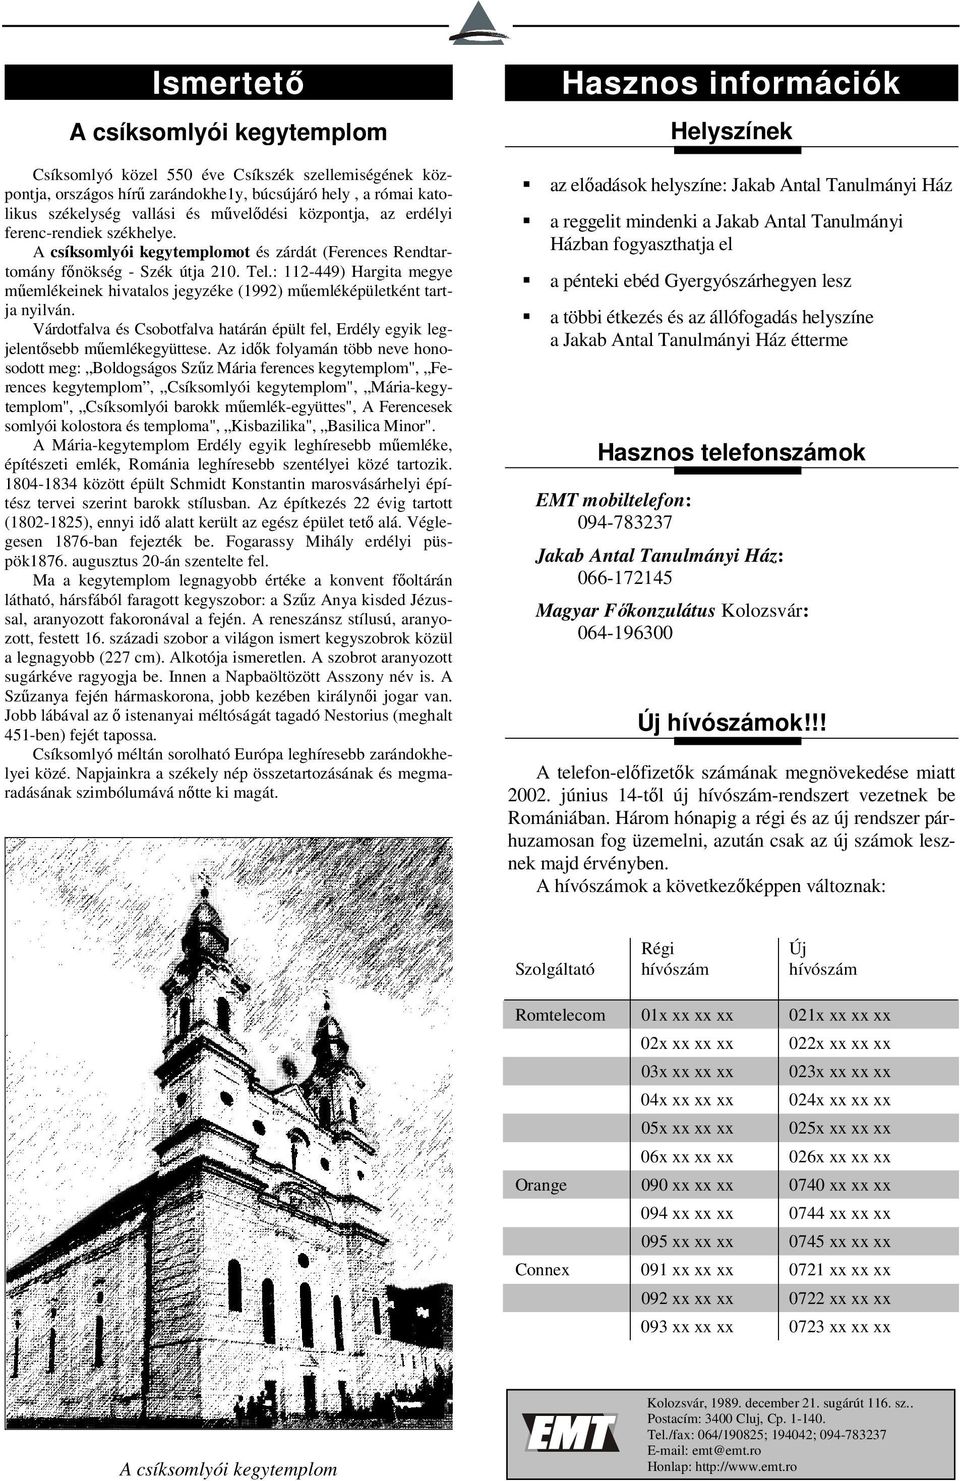 : 112-449) Hargita megye műemlékeinek hivatalos jegyzéke (1992) műemléképületként tartja nyilván. Várdotfalva és Csobotfalva határán épült fel, Erdély egyik legjelentősebb műemlékegyüttese.